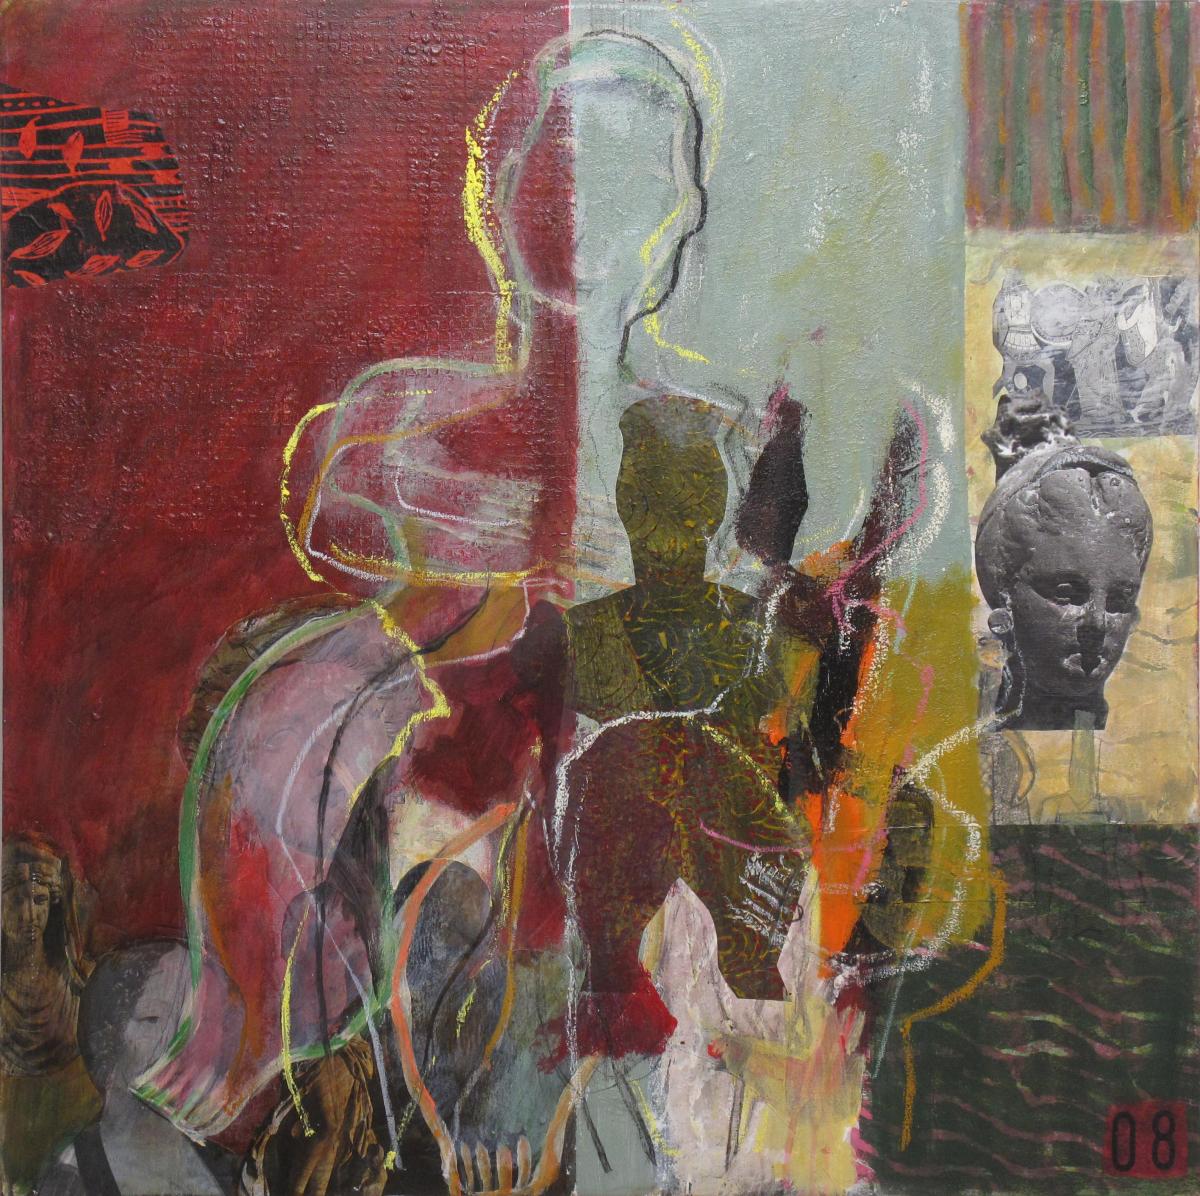 Göttinnen I, 2008, Acryl und Collage auf Leinwand, 100 x 100 cm